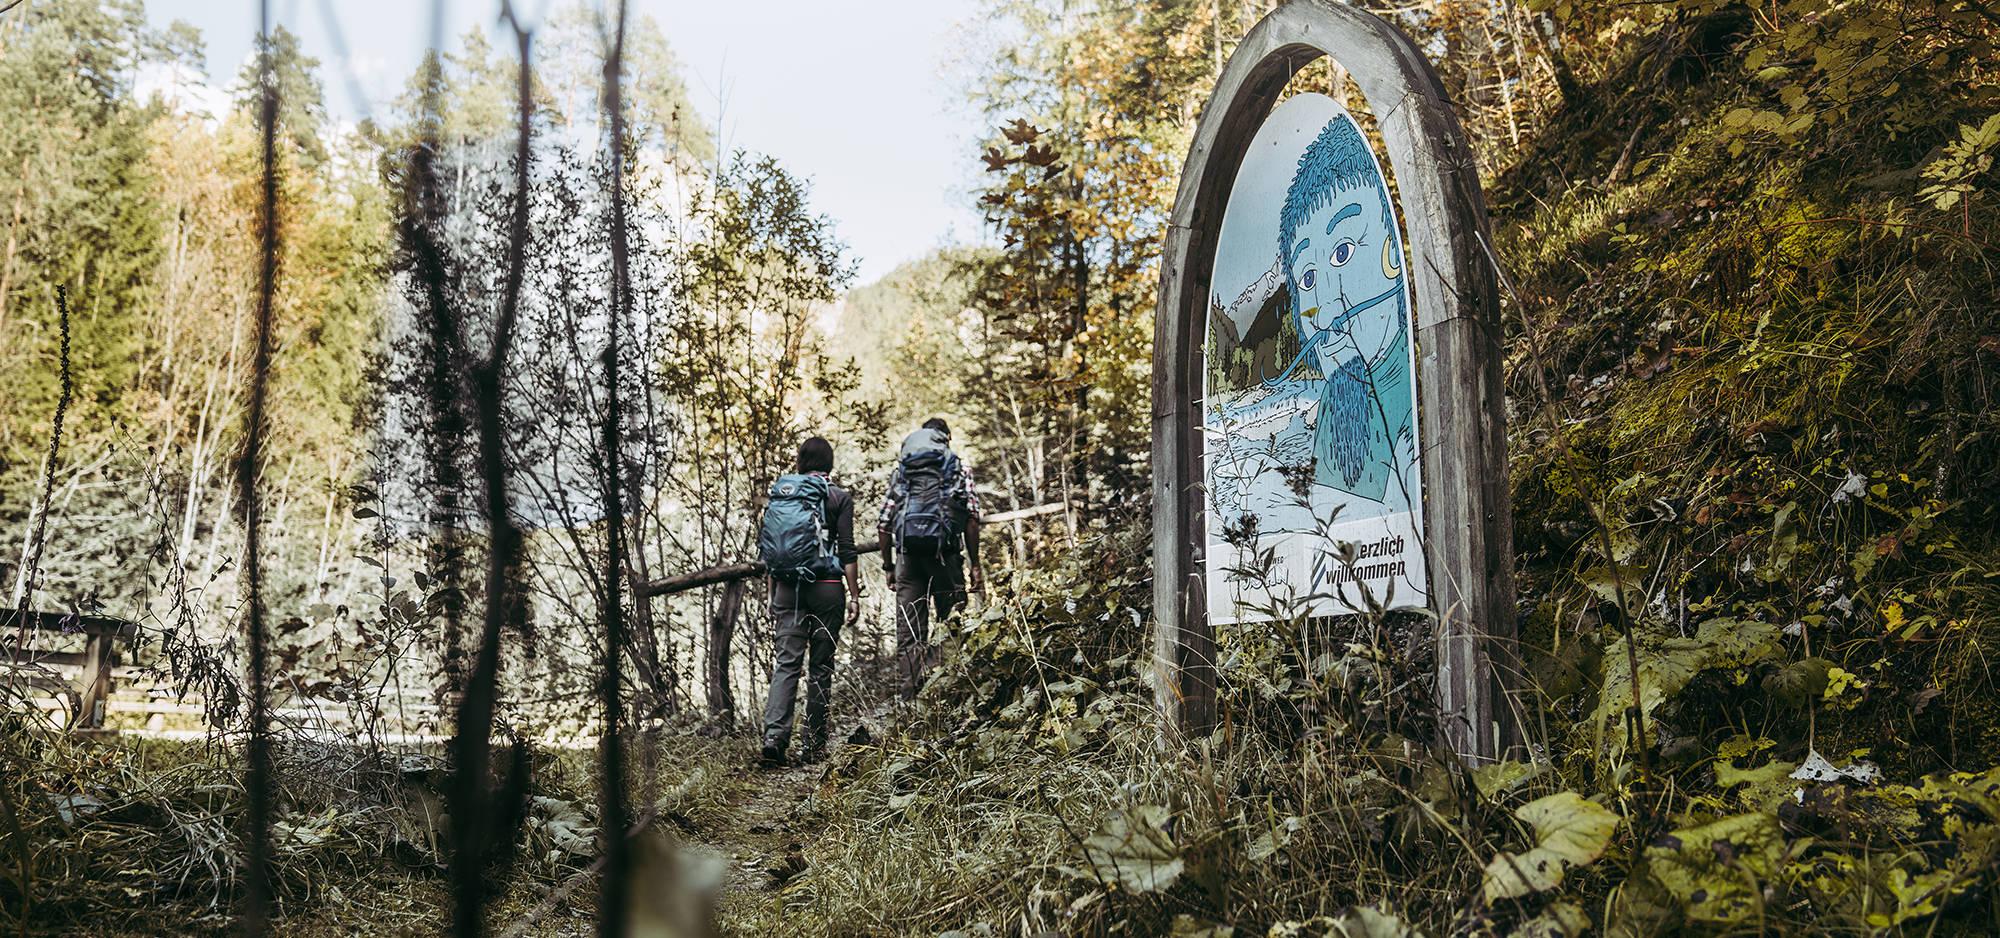 Zwei Personen gehen einen Wanderweg im Wald hinauf